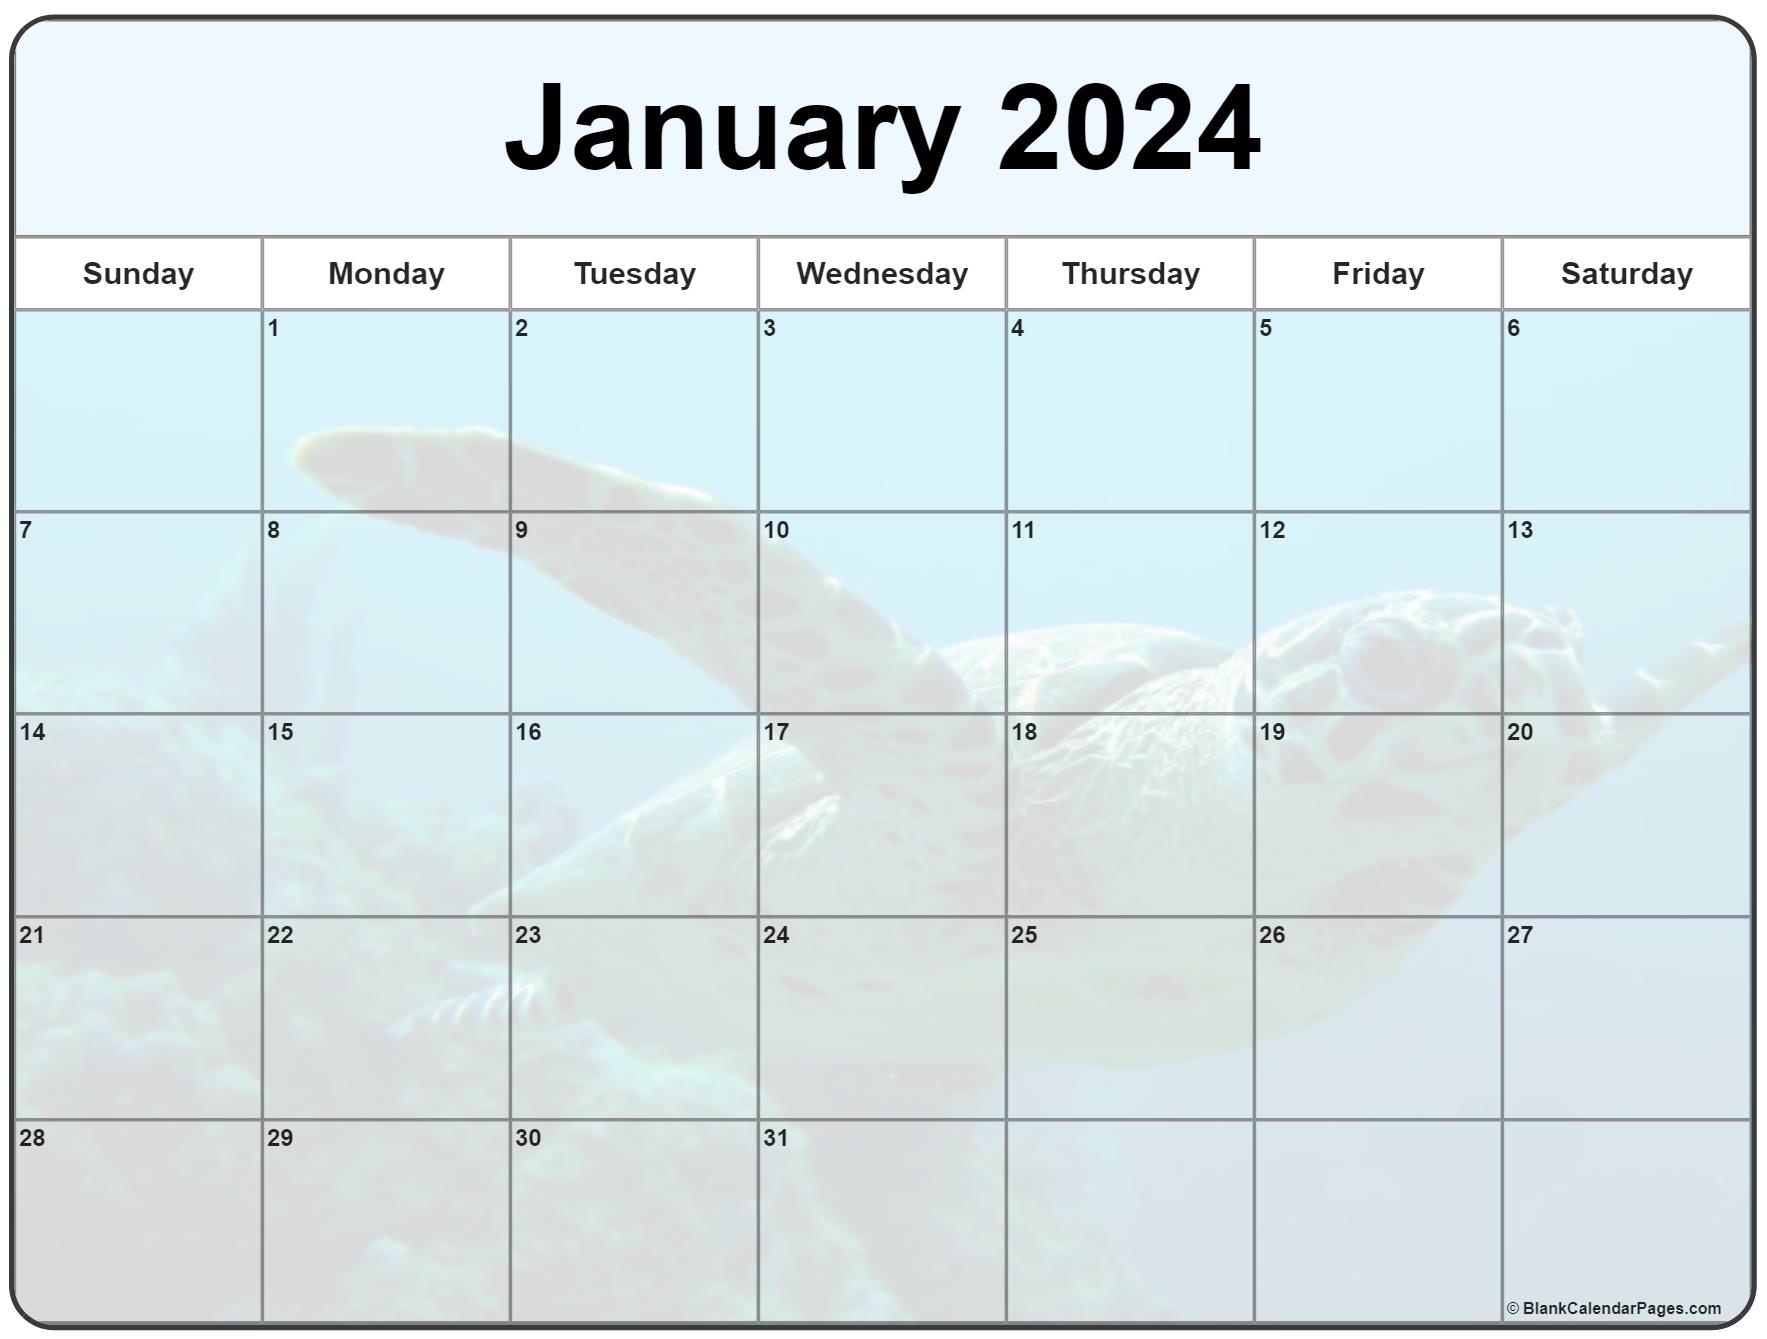 january-2024-bir-calendar-cool-latest-incredible-january-2024-calendar-blank